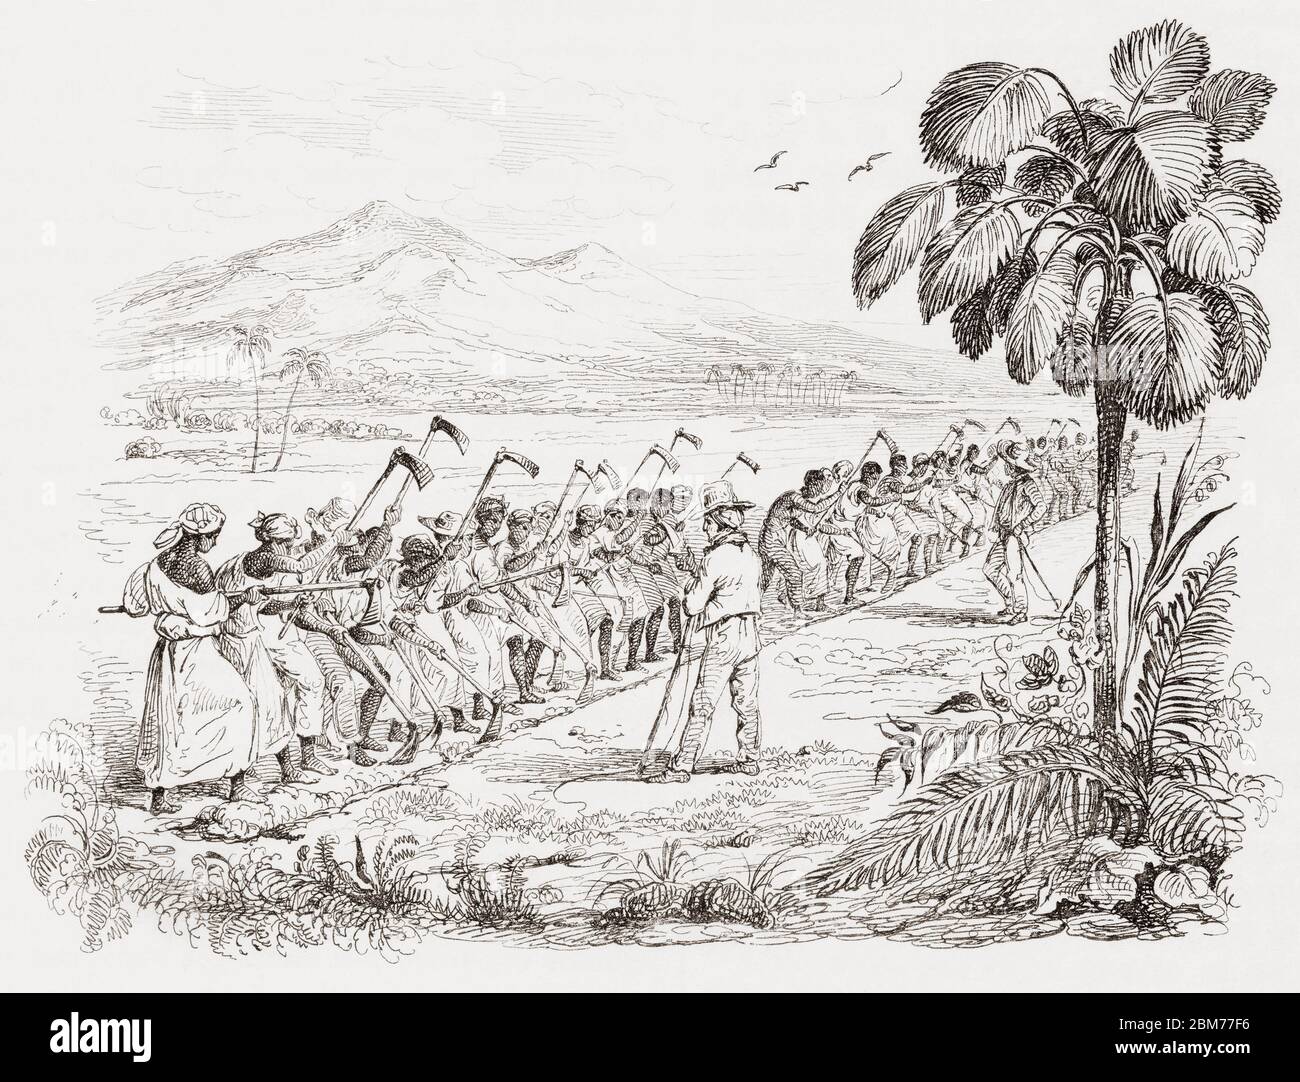 Eine Sklavenbande, die um 1826 auf einer von Aufsehern bewachten Plantage in Martinique arbeitete. Nach einem Stich in dem Buch Voyage Pittoresque dans les Deux Amèriques von Alcide Dessalines d’Orbigny, das 1836 in Paris veröffentlicht wurde. Stockfoto